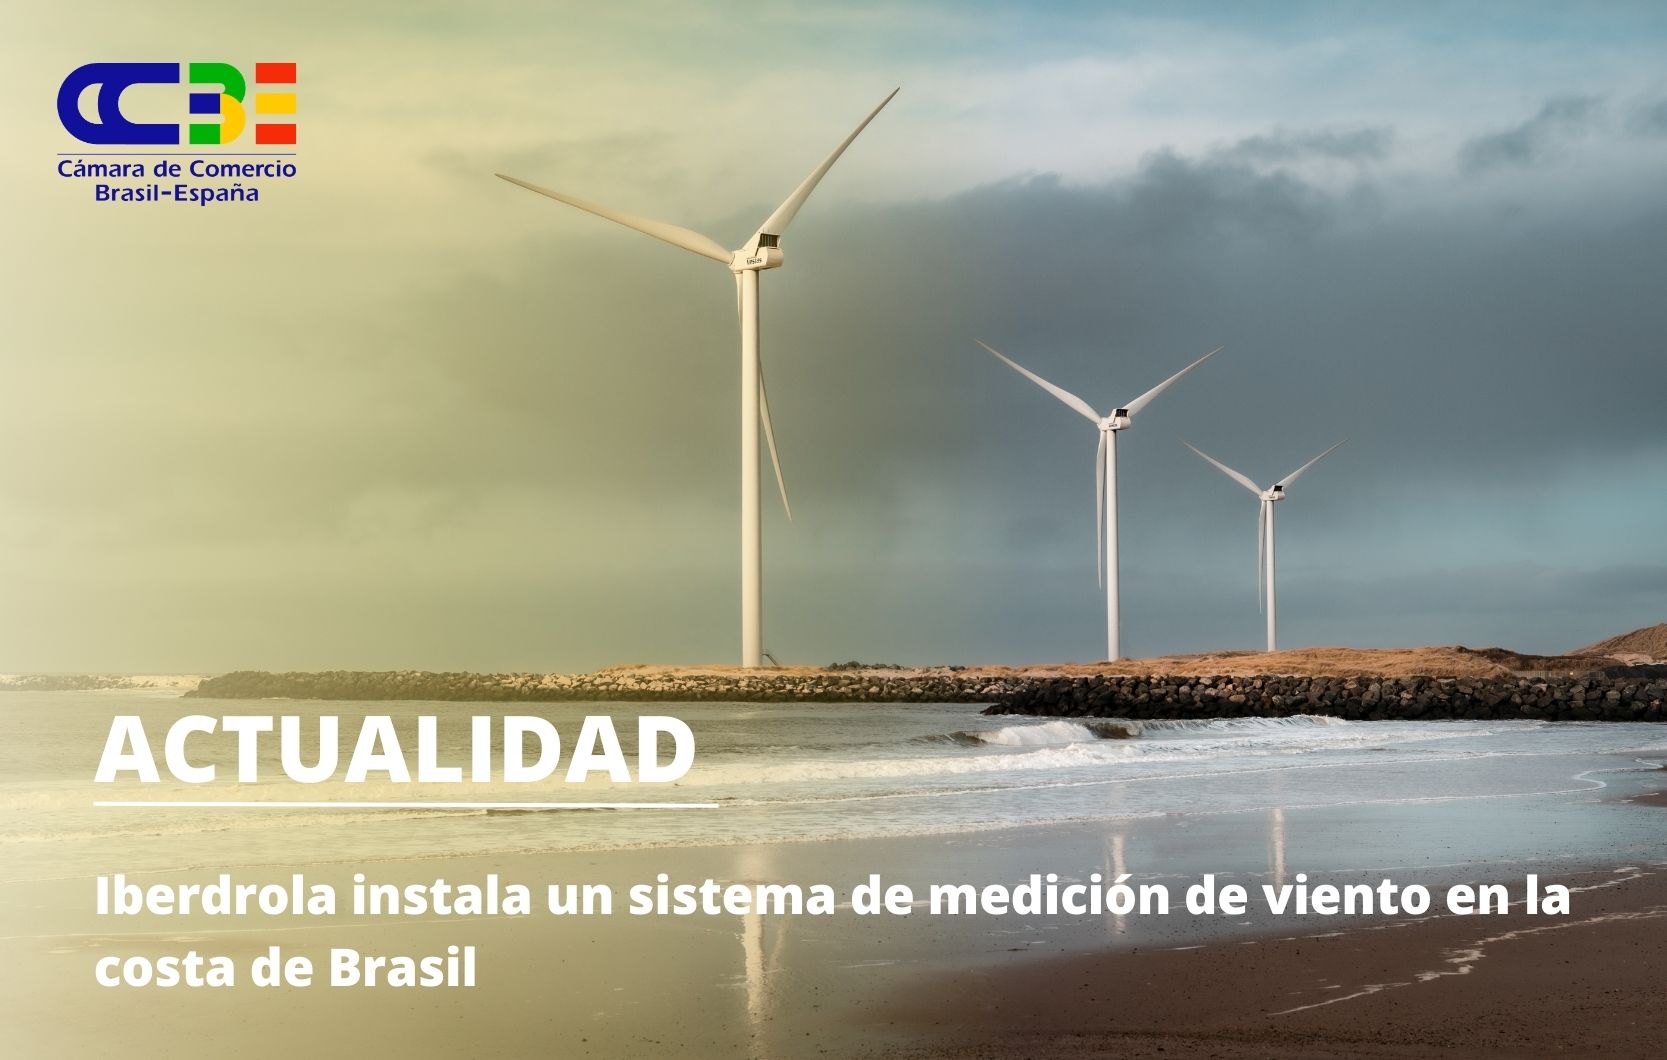 Iberdrola instala un sistema de medición de viento en la costa de Brasil